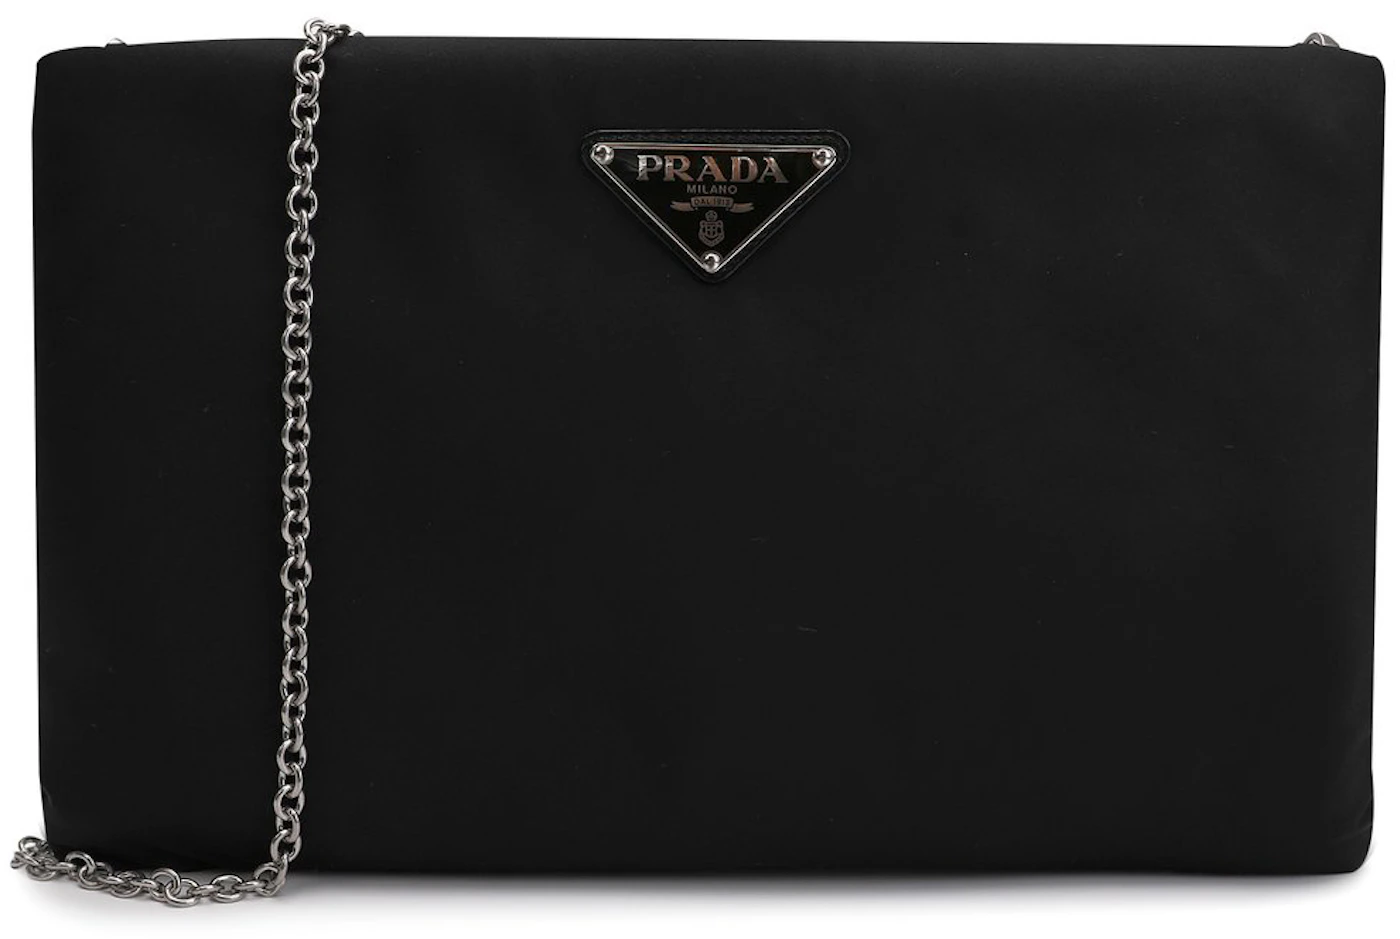 Prada Madras Clutch - Black Clutches, Handbags - PRA890522